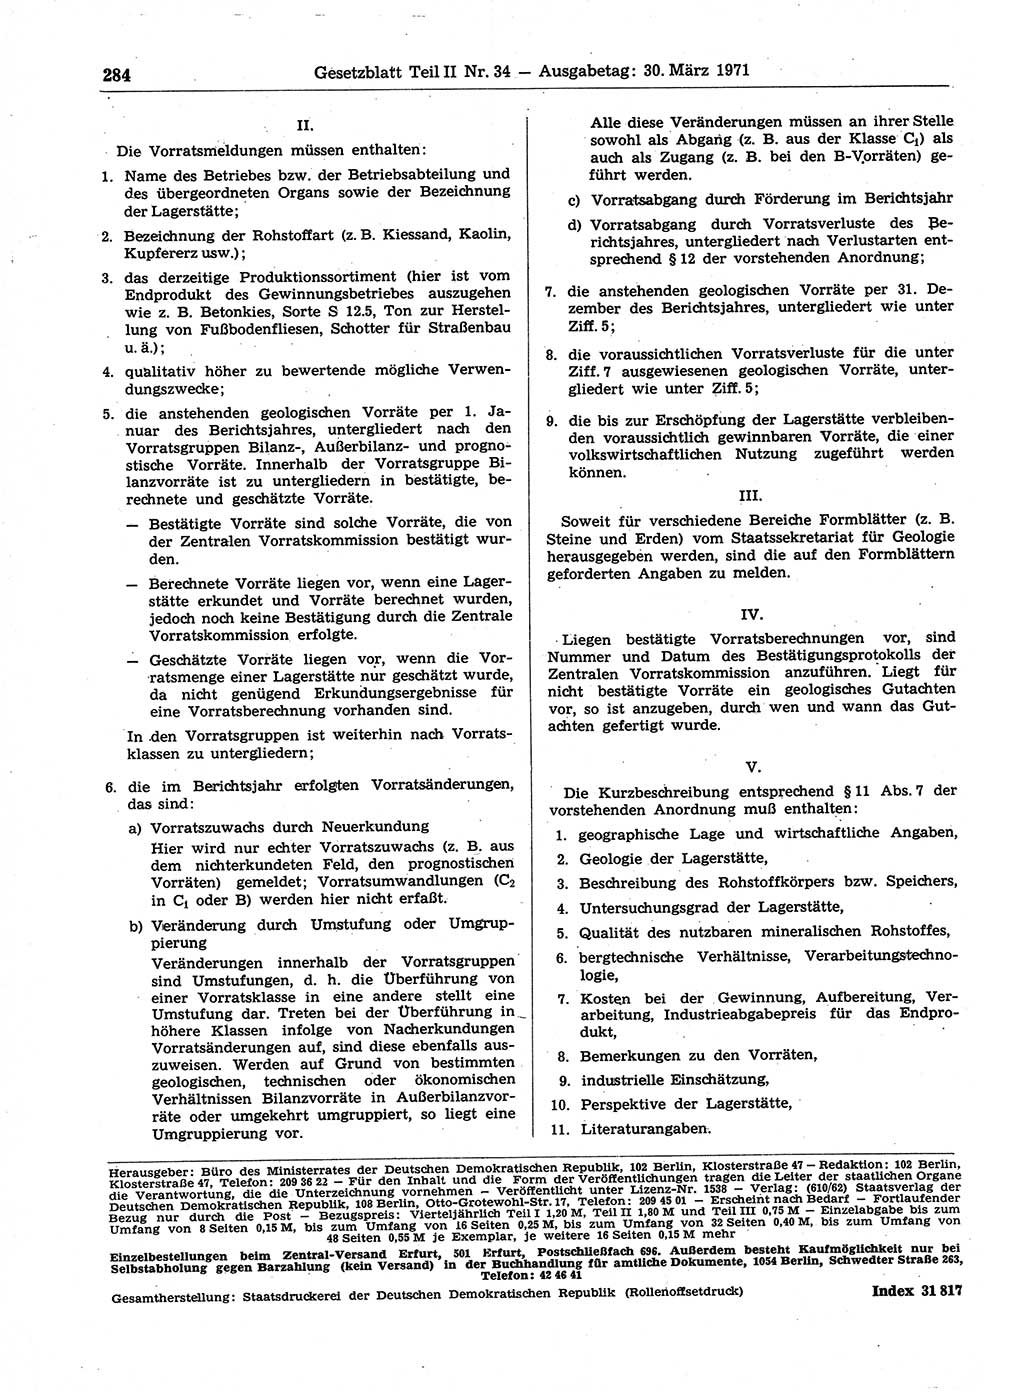 Gesetzblatt (GBl.) der Deutschen Demokratischen Republik (DDR) Teil ⅠⅠ 1971, Seite 284 (GBl. DDR ⅠⅠ 1971, S. 284)